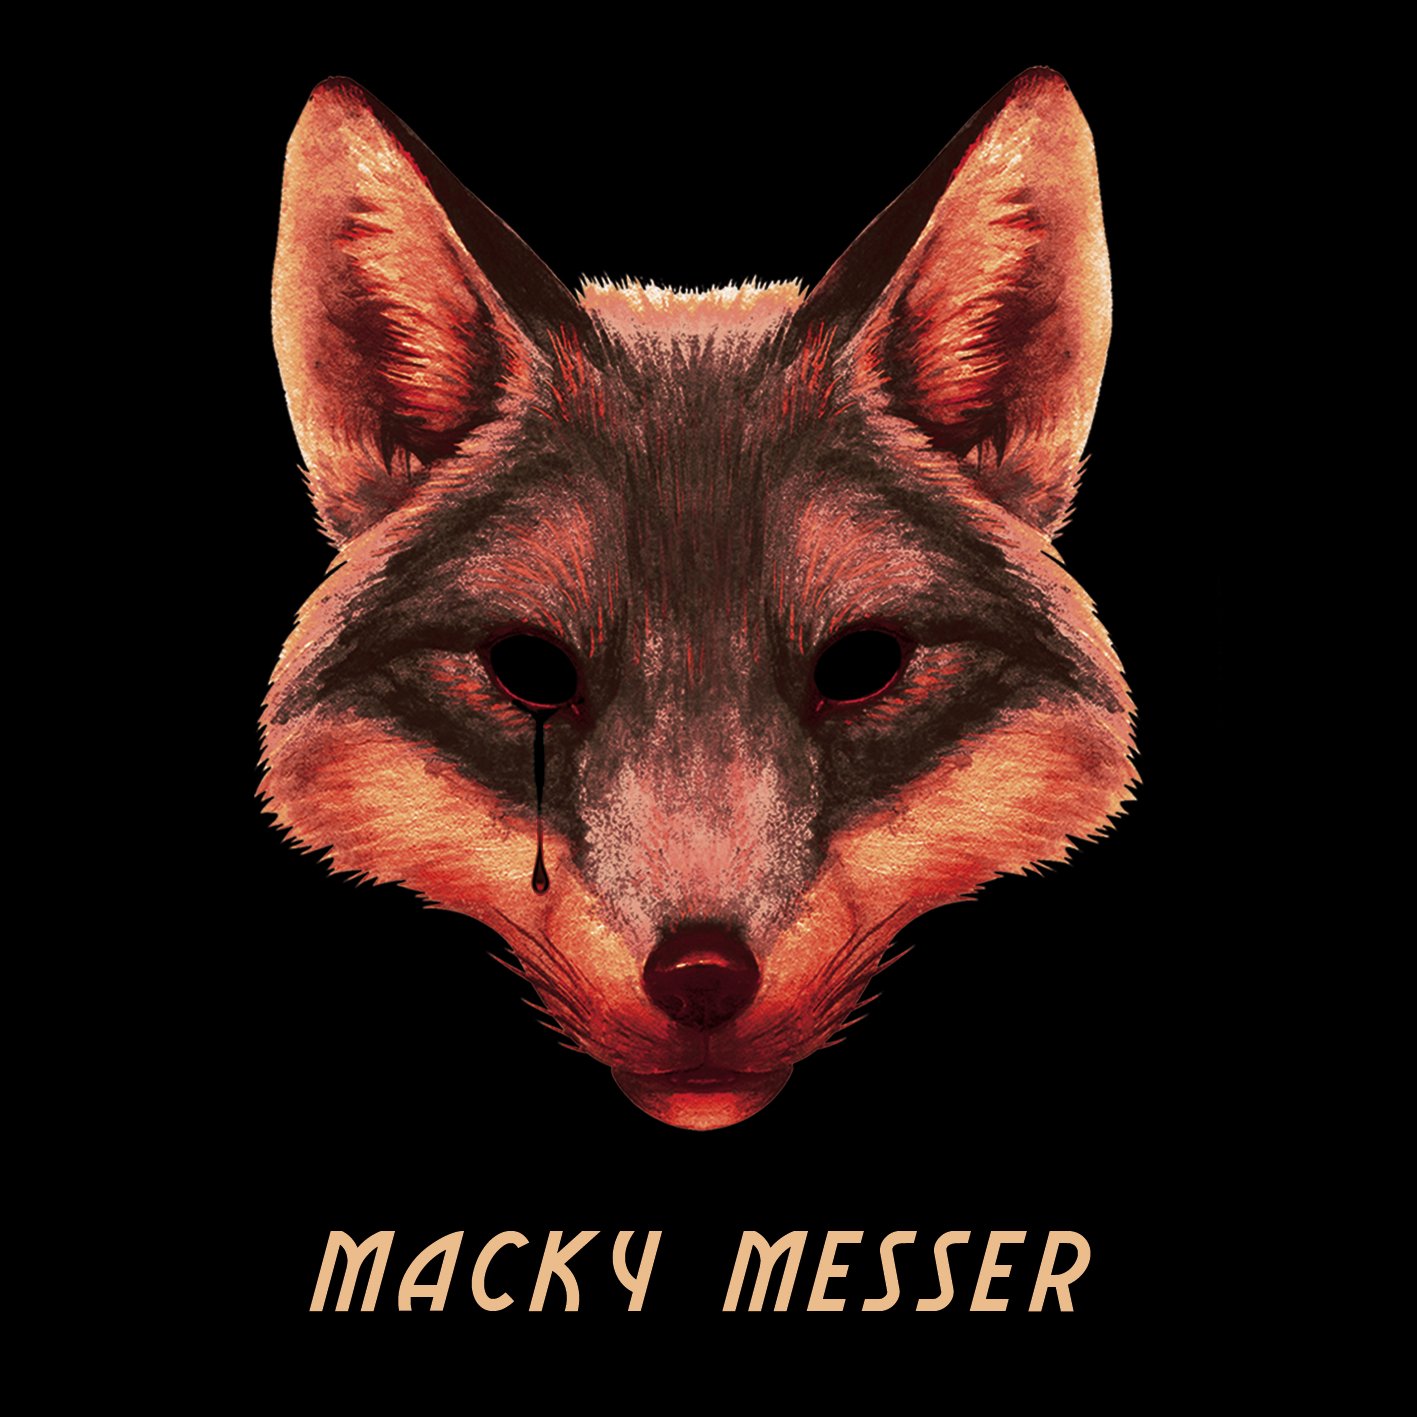 Macky Messer